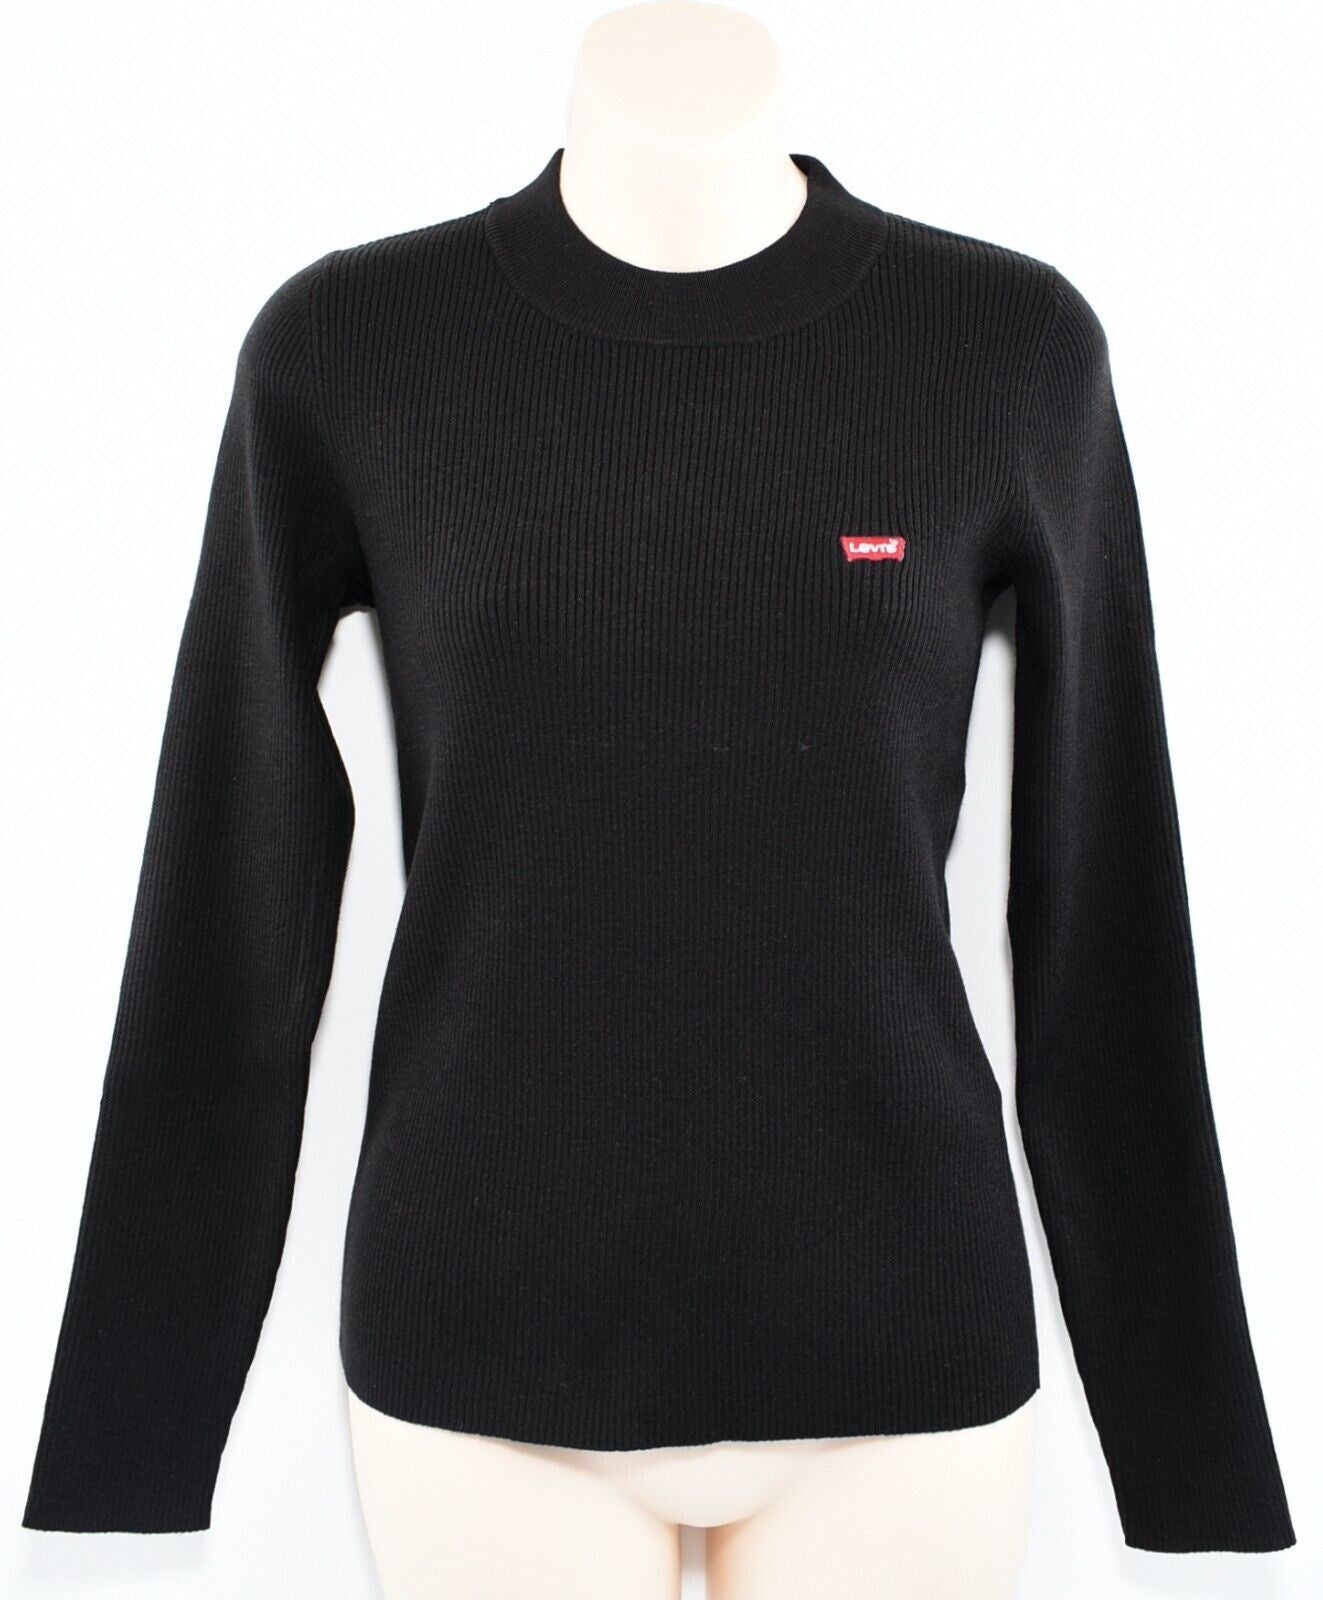 LEVI'S Women's Slim Fit Rib Knit Jumper /Sweater, Caviar Black, size XS (UK 8)